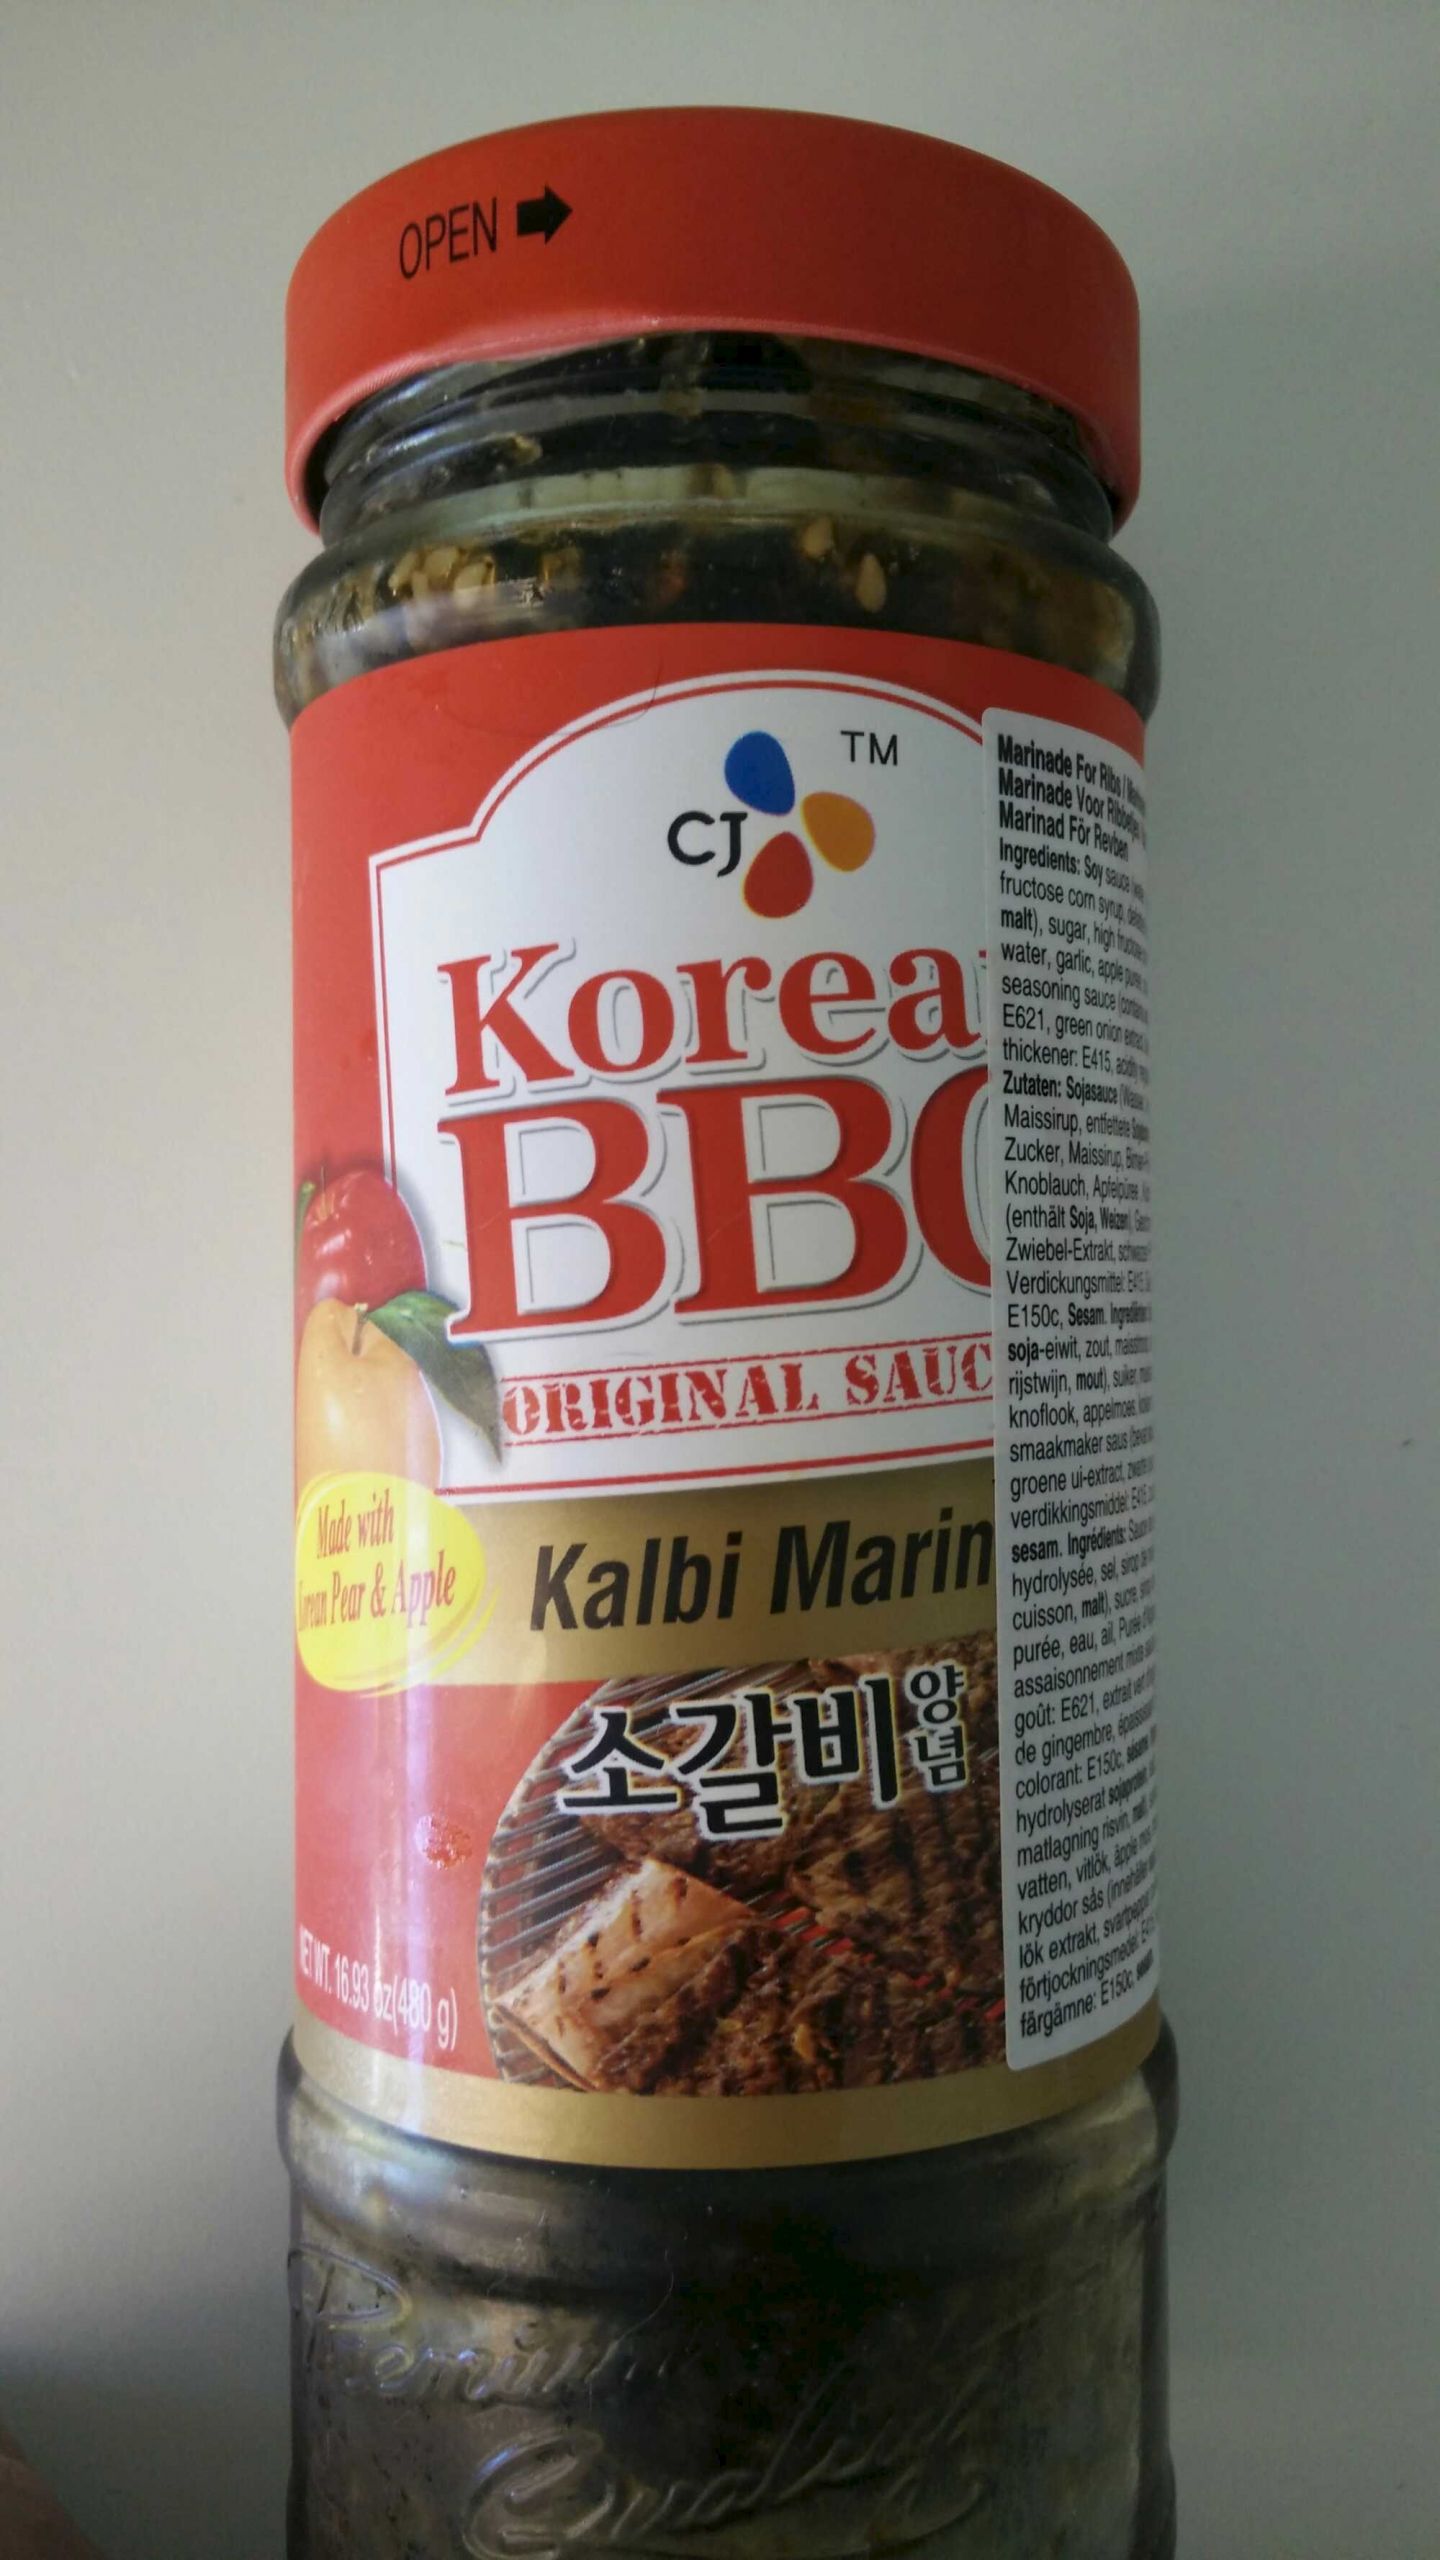 Bbq Sauce Marinade
 Korean BBQ Original Sauce Kalbi Marinade CJ 480 g